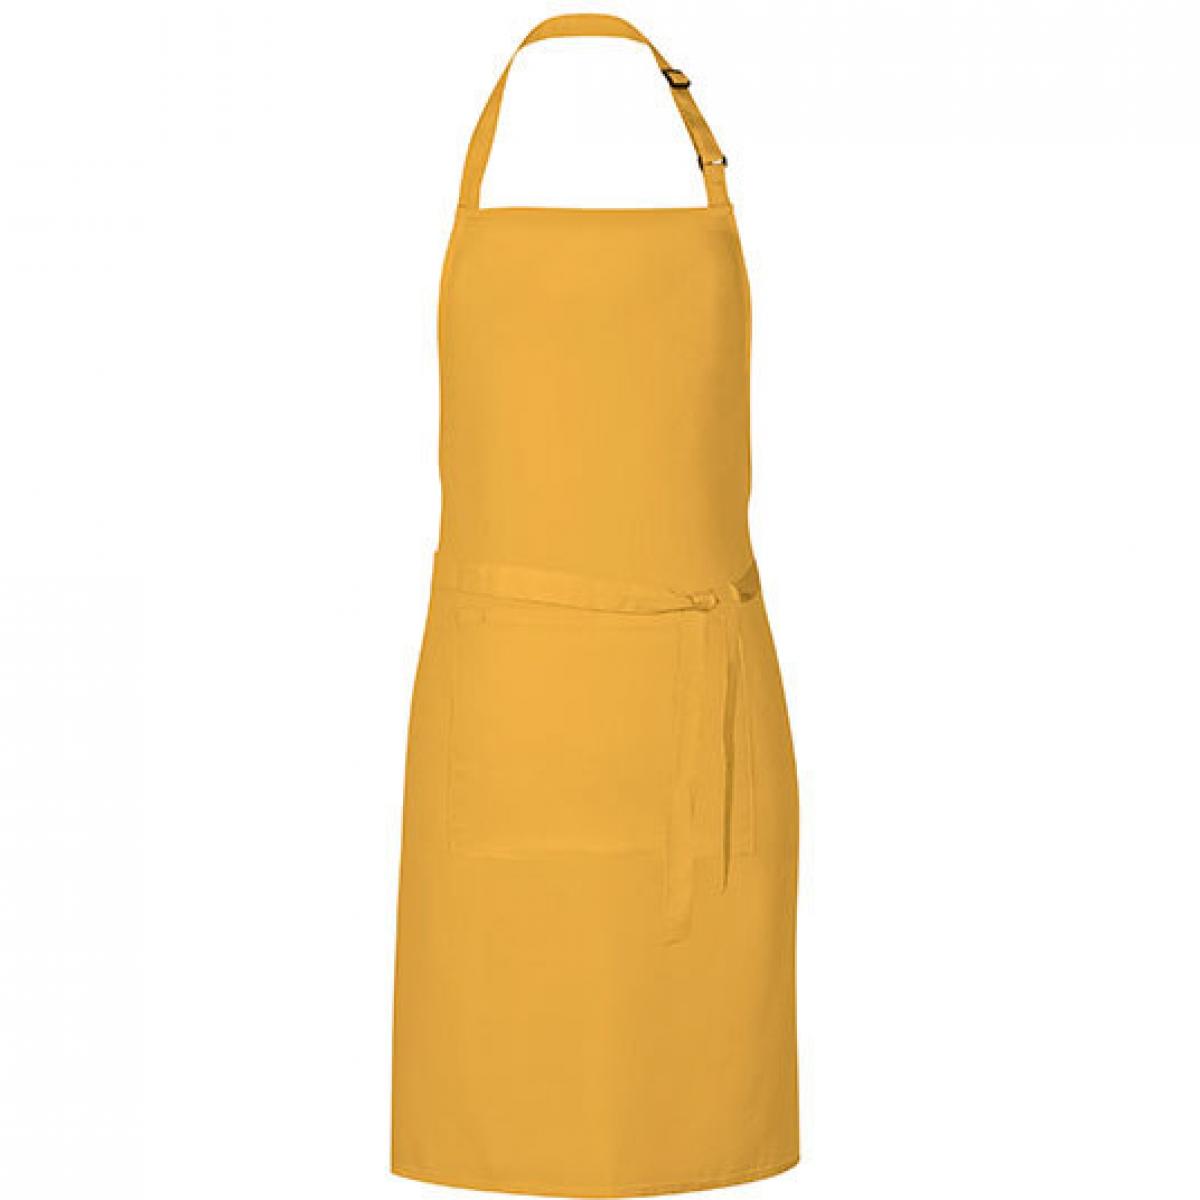 Hersteller: Link Kitchen Wear Herstellernummer: GS8572 Artikelbezeichnung: Grill Apron - 85 x 72 cm - Waschbar bis 60 °C Farbe: Sunflower (ca. Pantone 136c)